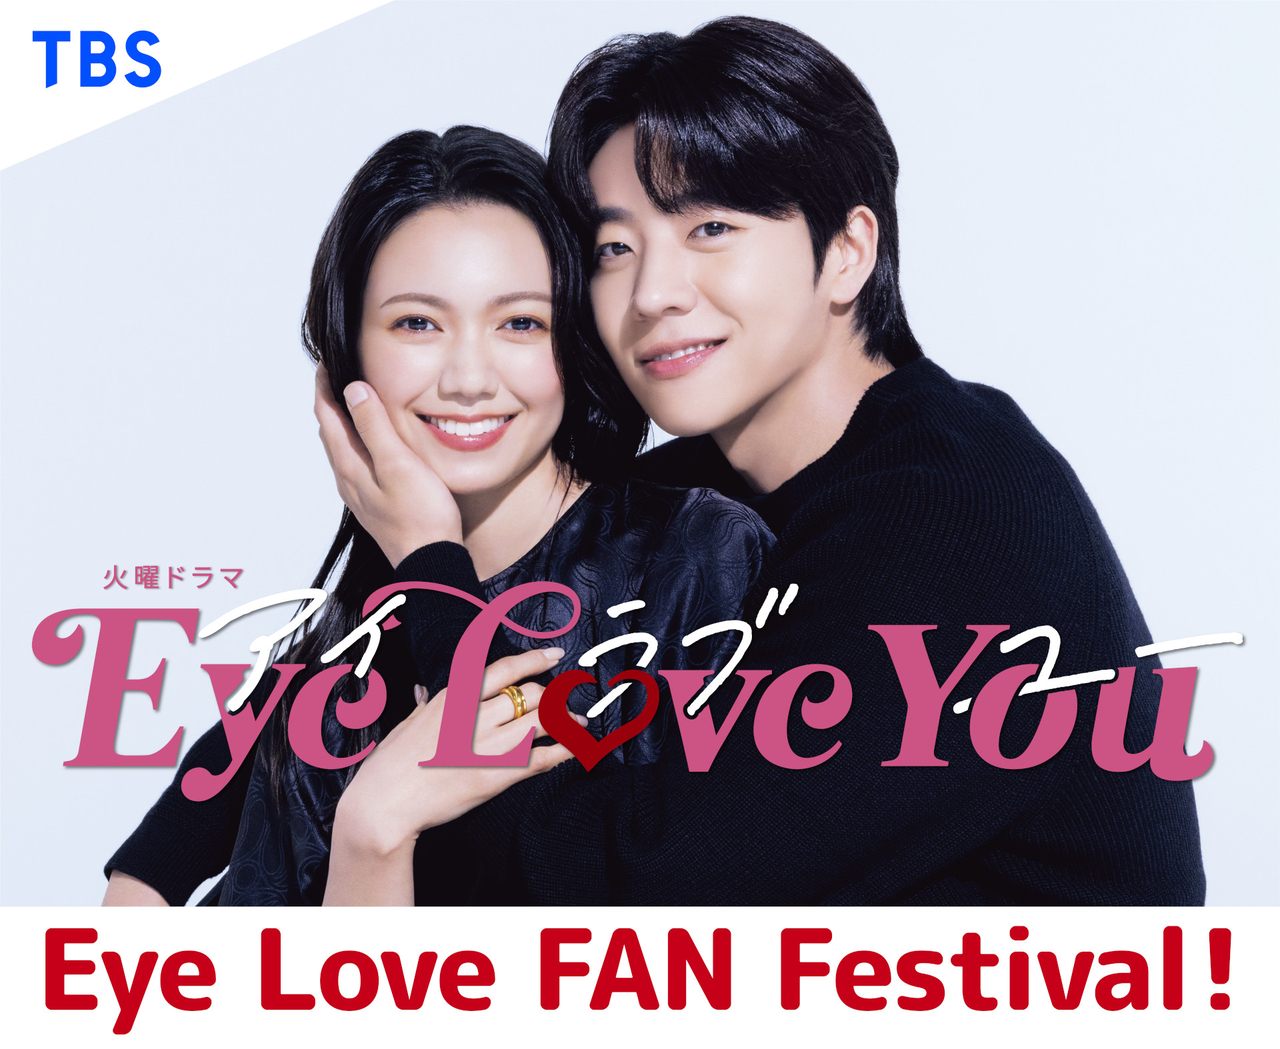 ドラマ「Eye Love You」ファンイベント開催決定 二階堂ふみ、チェ・ジョンヒョプ、中川大志らが登壇